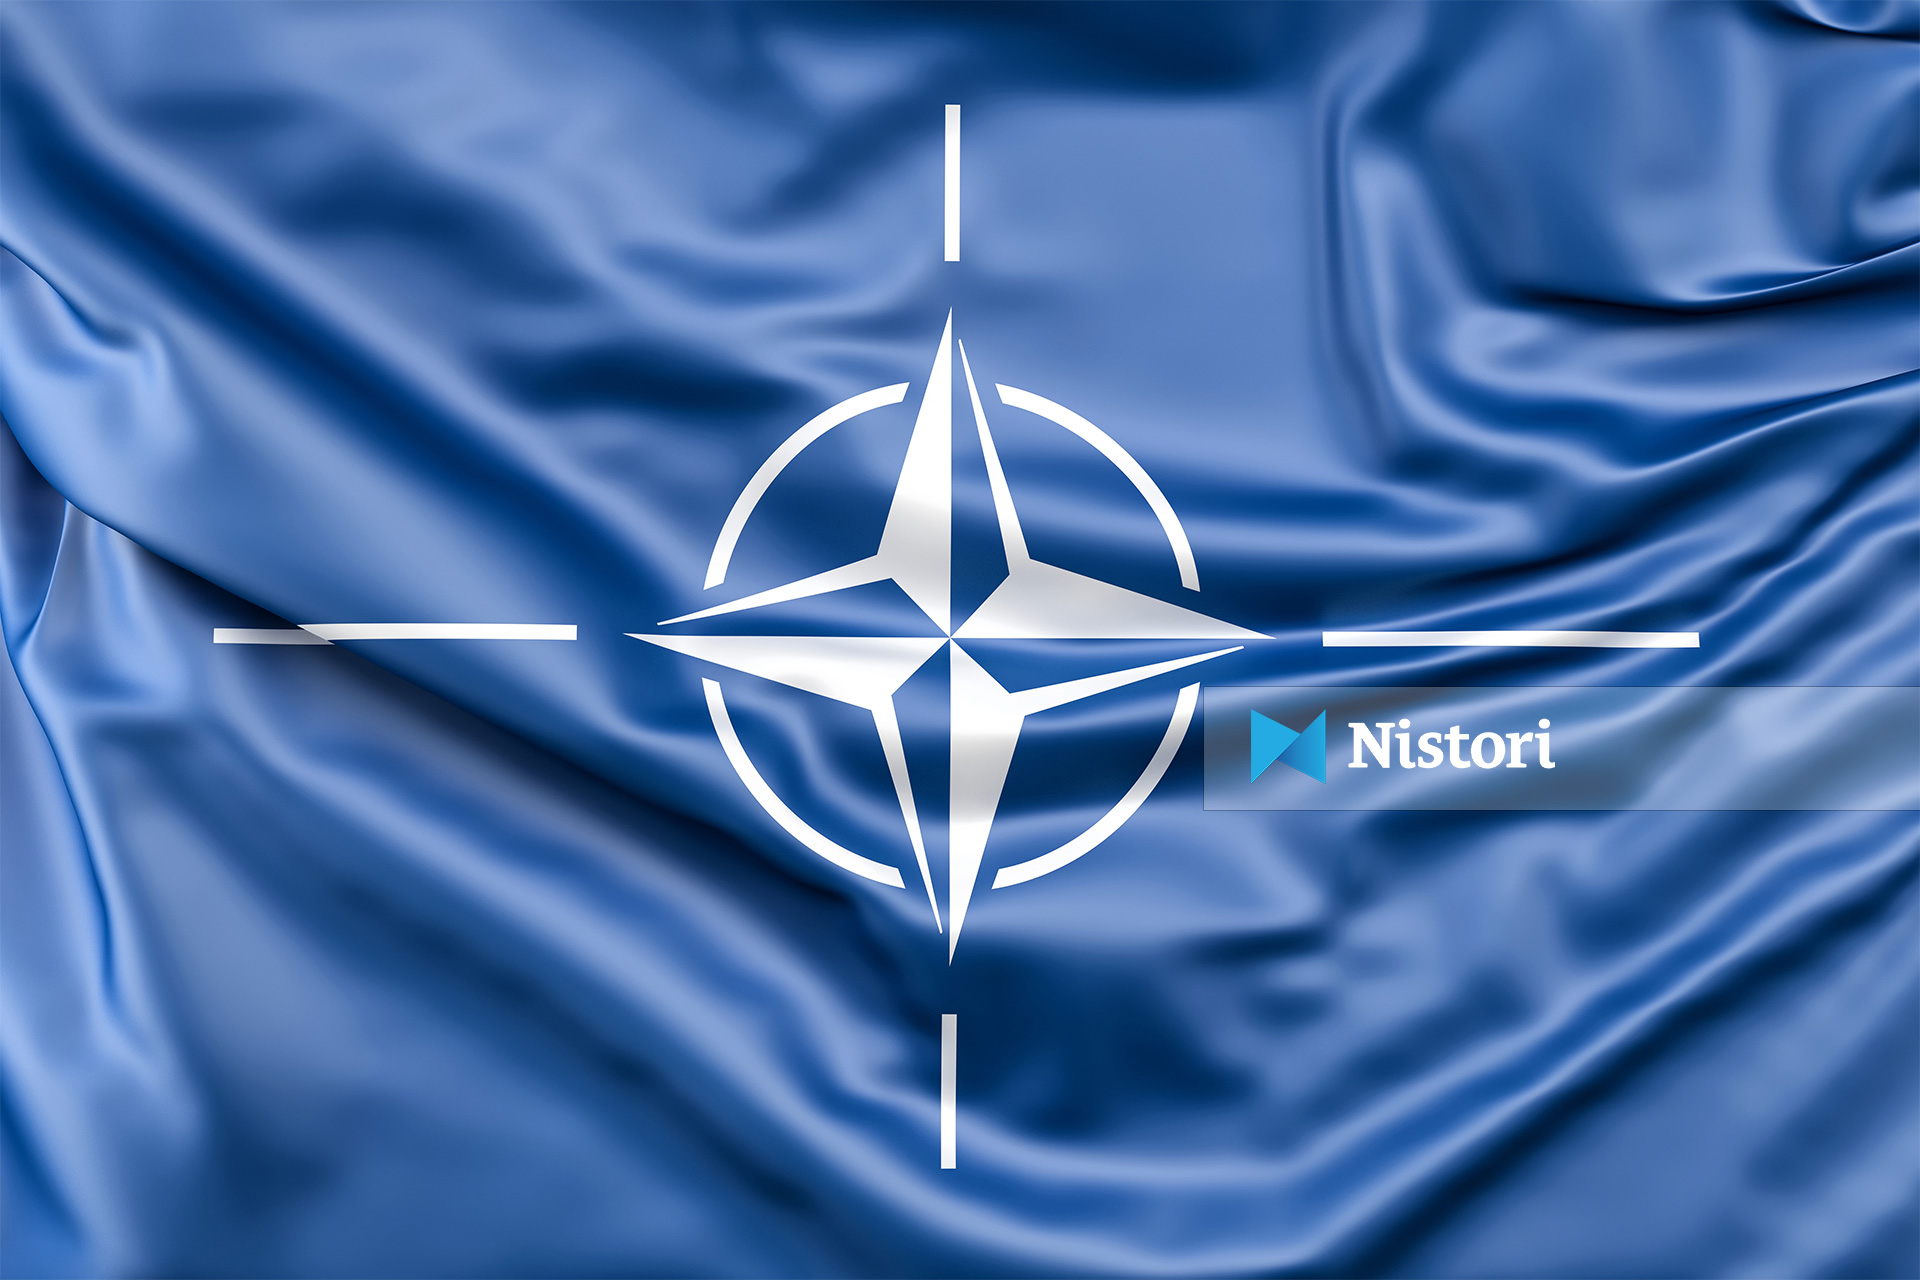 Shqipëria në NATO   Nga armiqësia  te bashkëpunimi strategjik